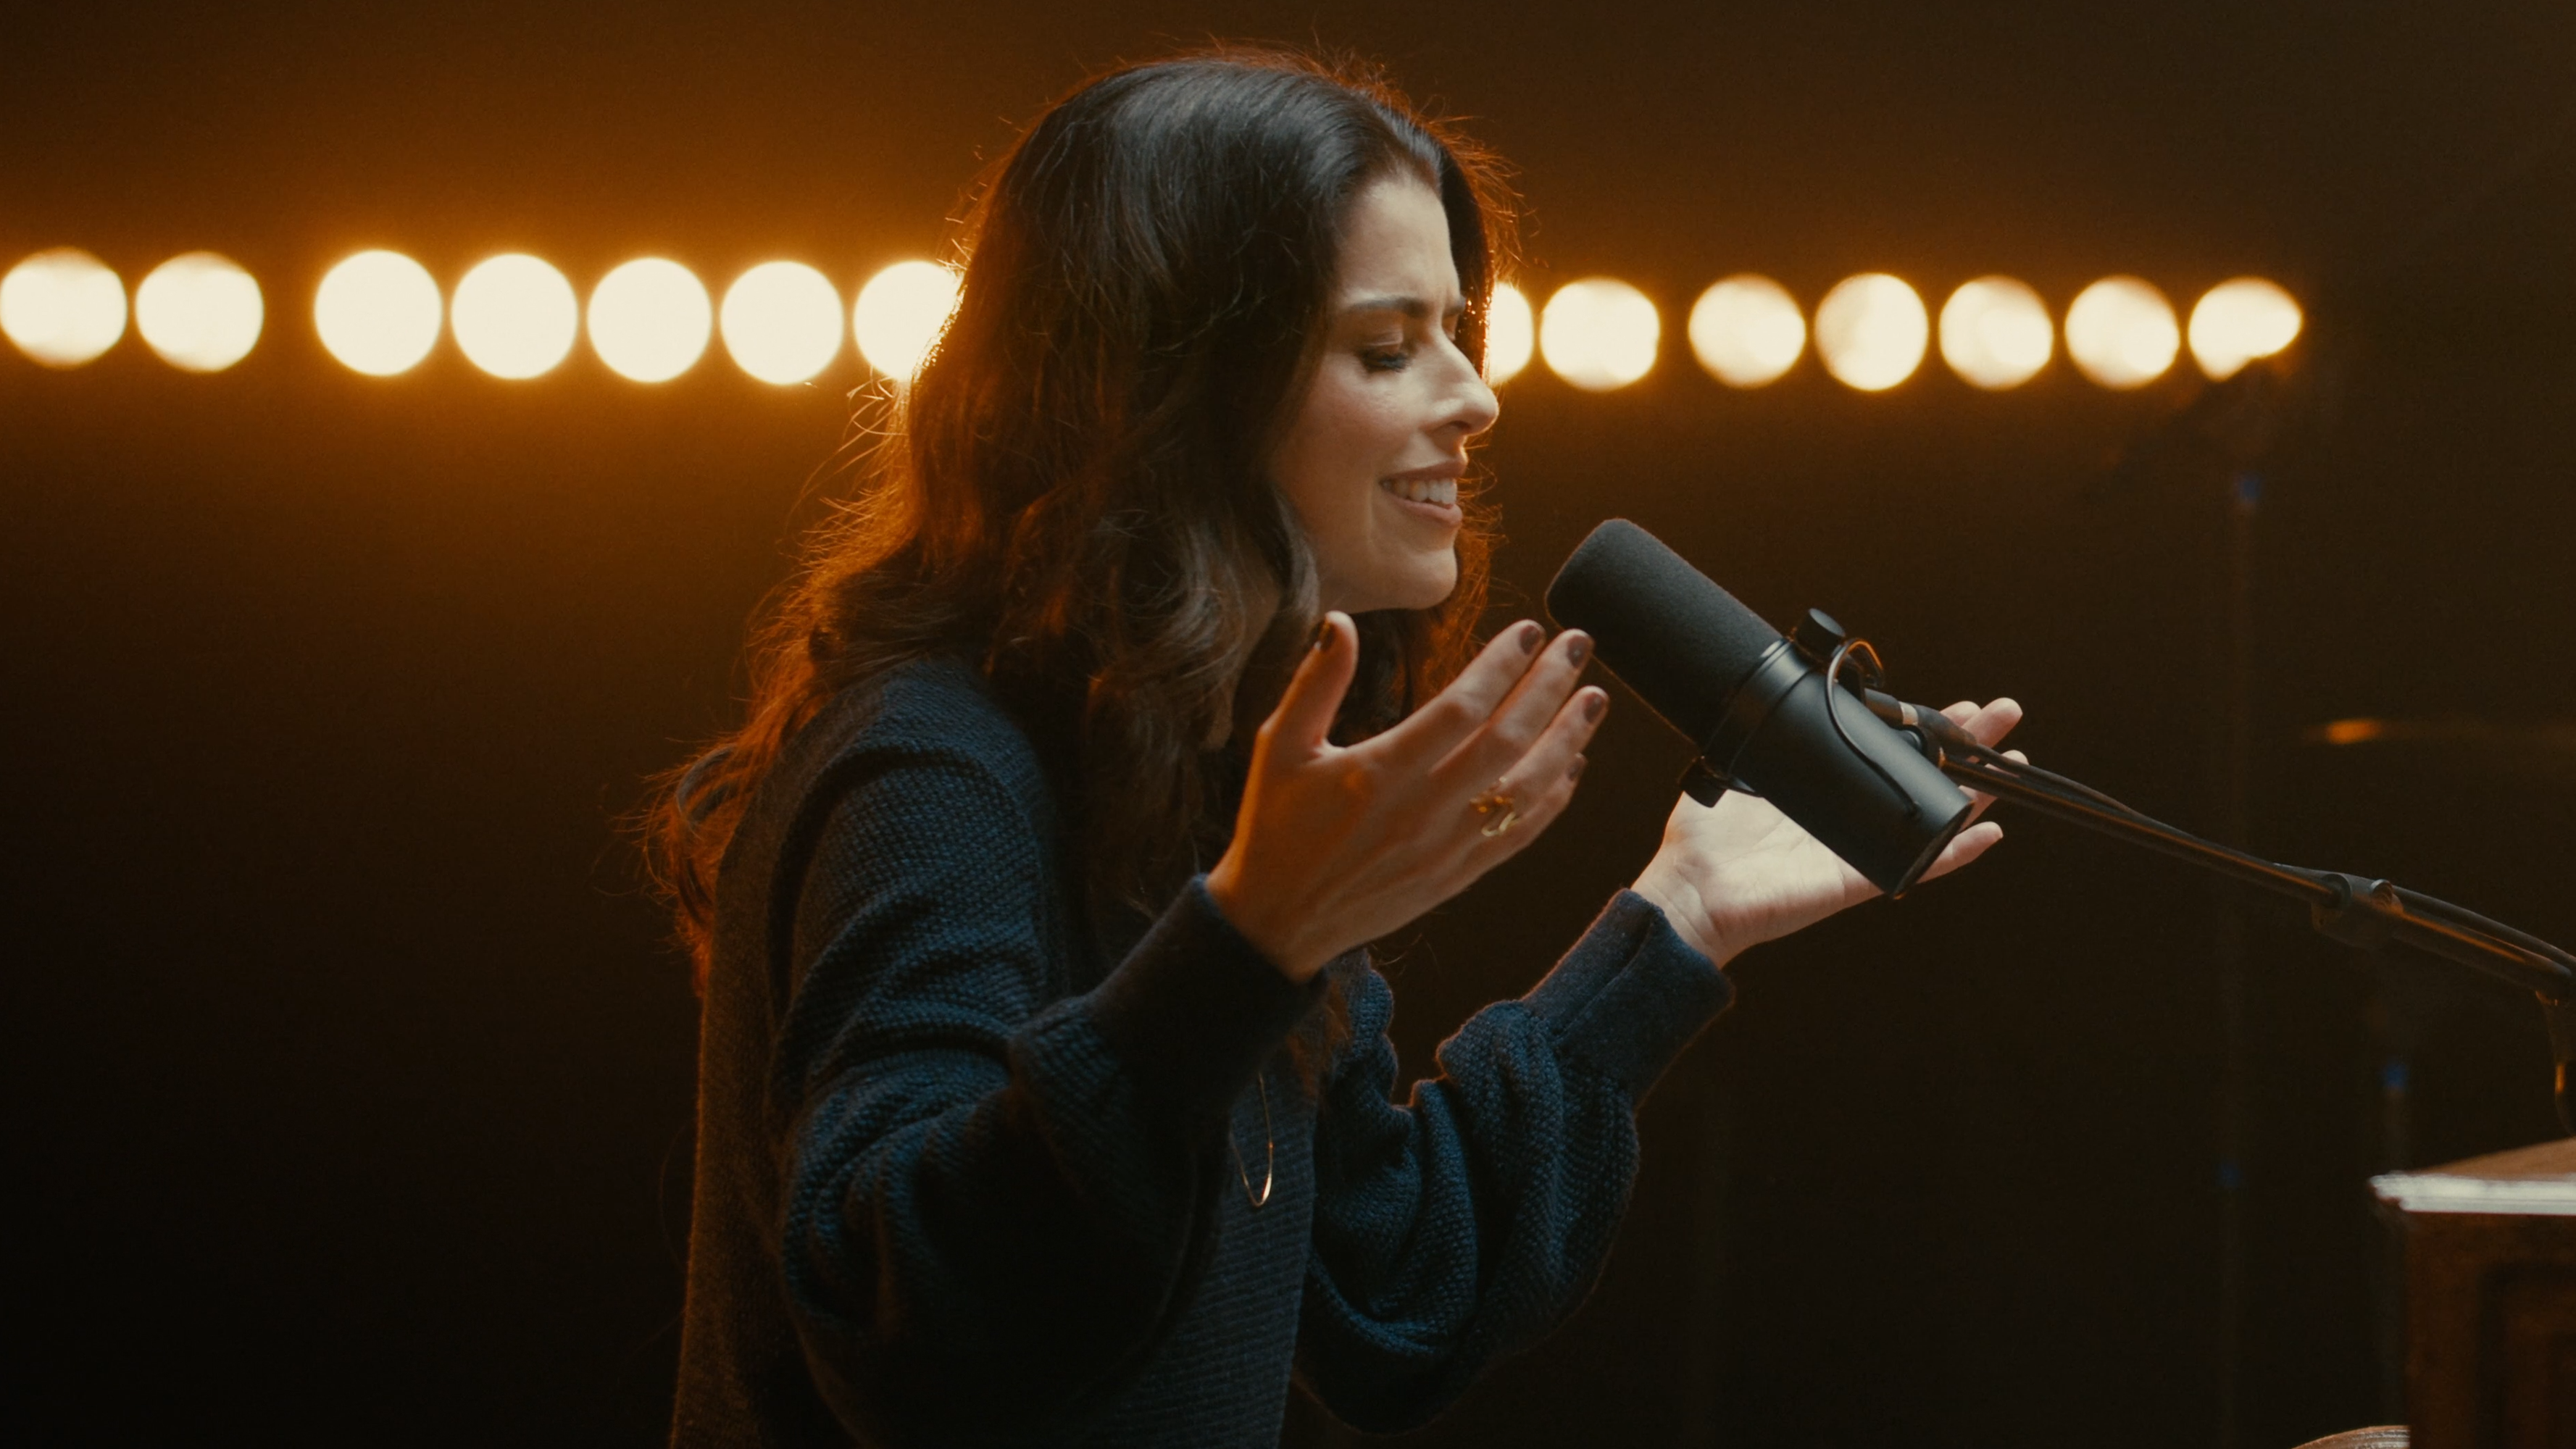 Nova música de Rachel Novaes fala sobre busca pela presença de Deus